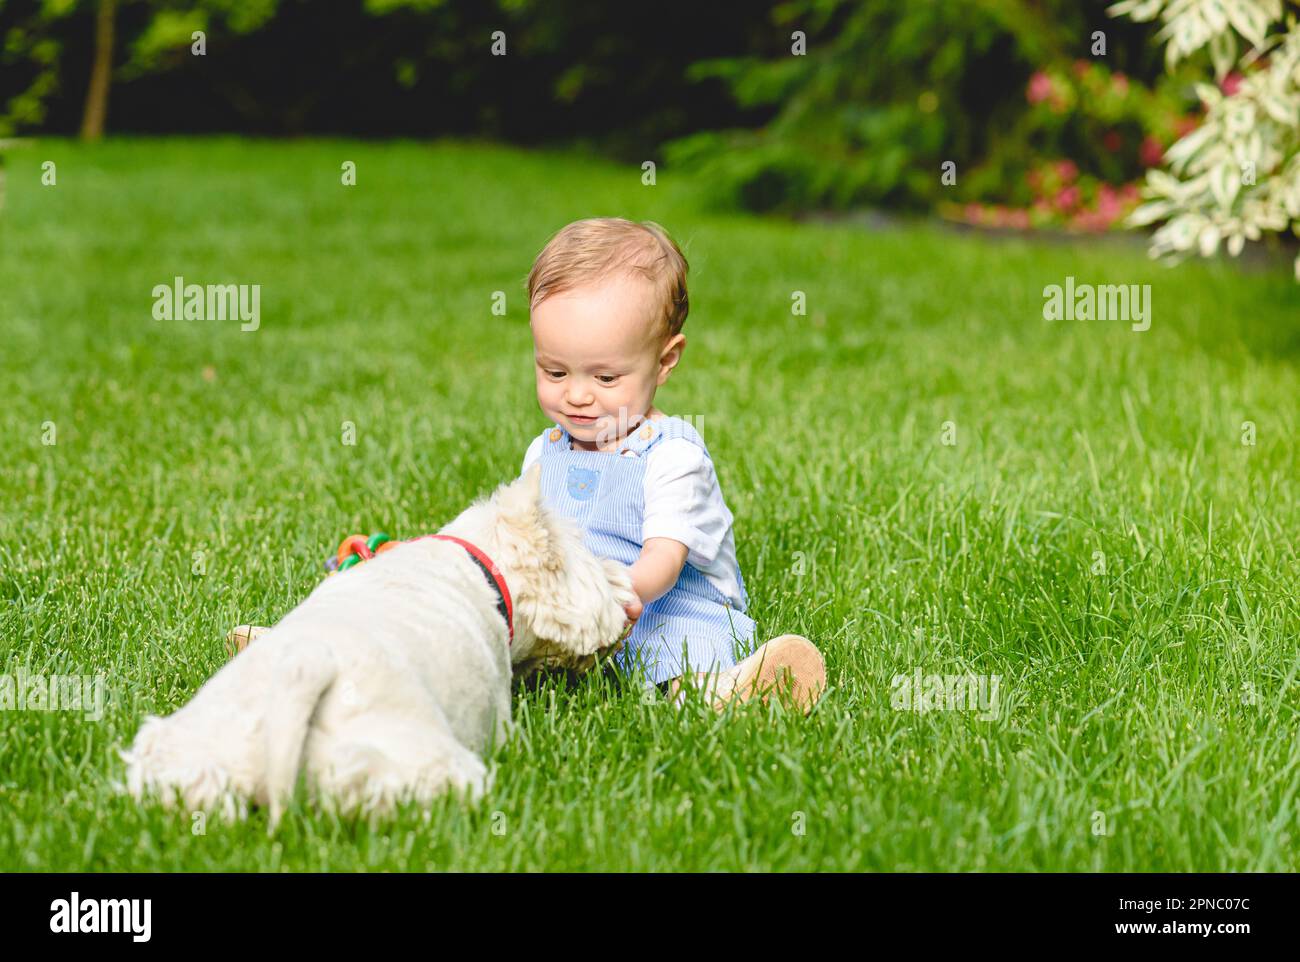 La bambina piccola dà il trattamento al suo cucciolo del cane. Amore e amicizia tra bambino e concetto di animale domestico Foto Stock